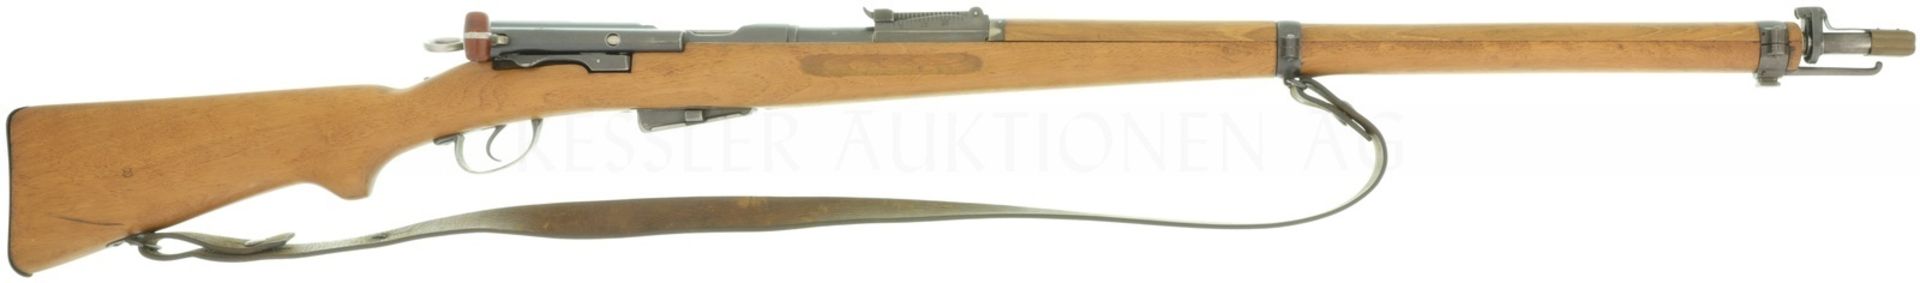 Repetierbüchse, WF Bern, Infanteriegewehr Mod. 11, Kal. 7.55x55